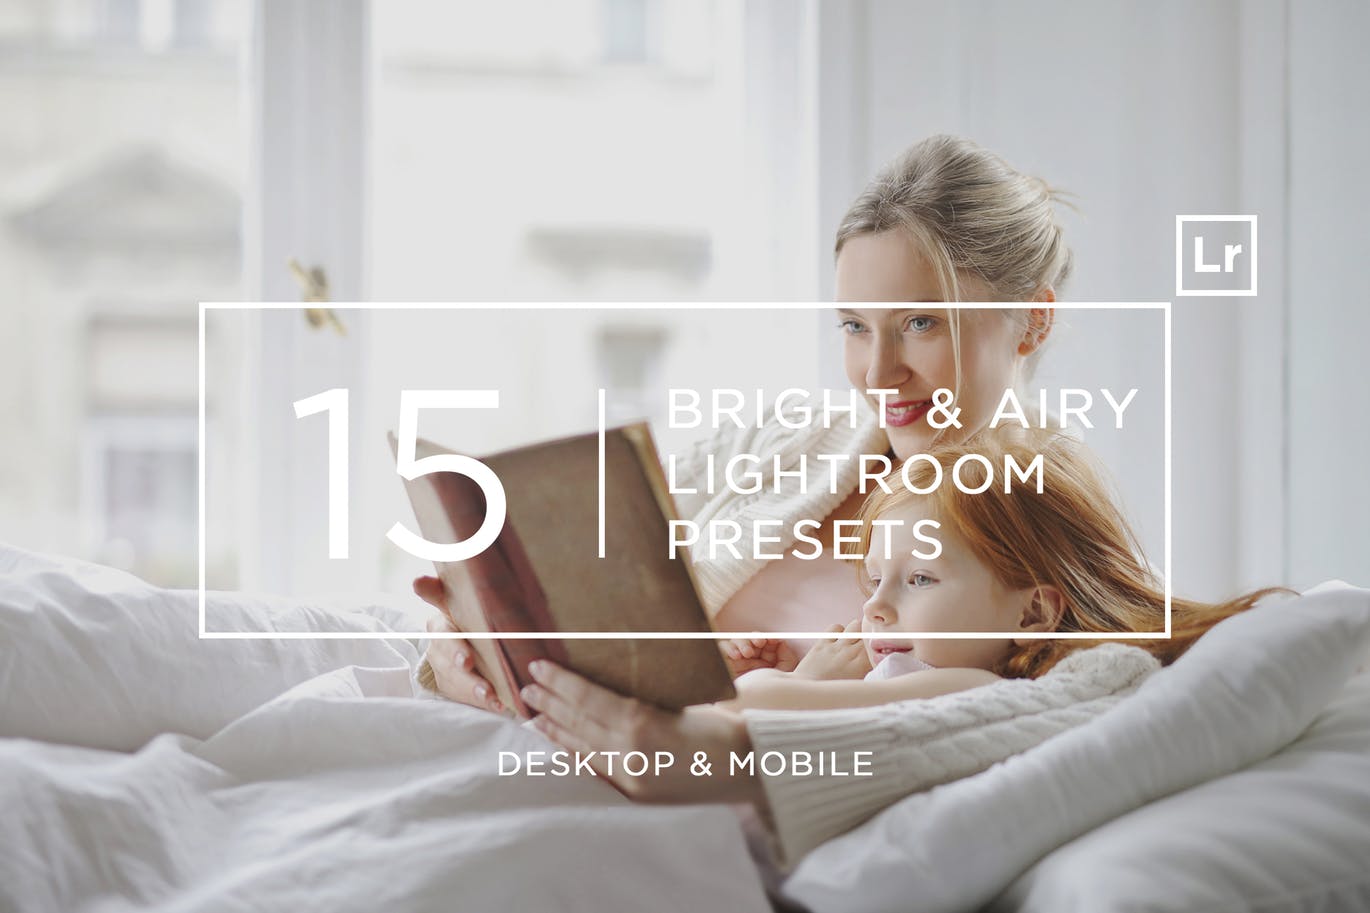 15款街拍必备的高效LR柔和亮色调色预设下载 15 Bright & Airy Lightroom Presets + Mobile插图